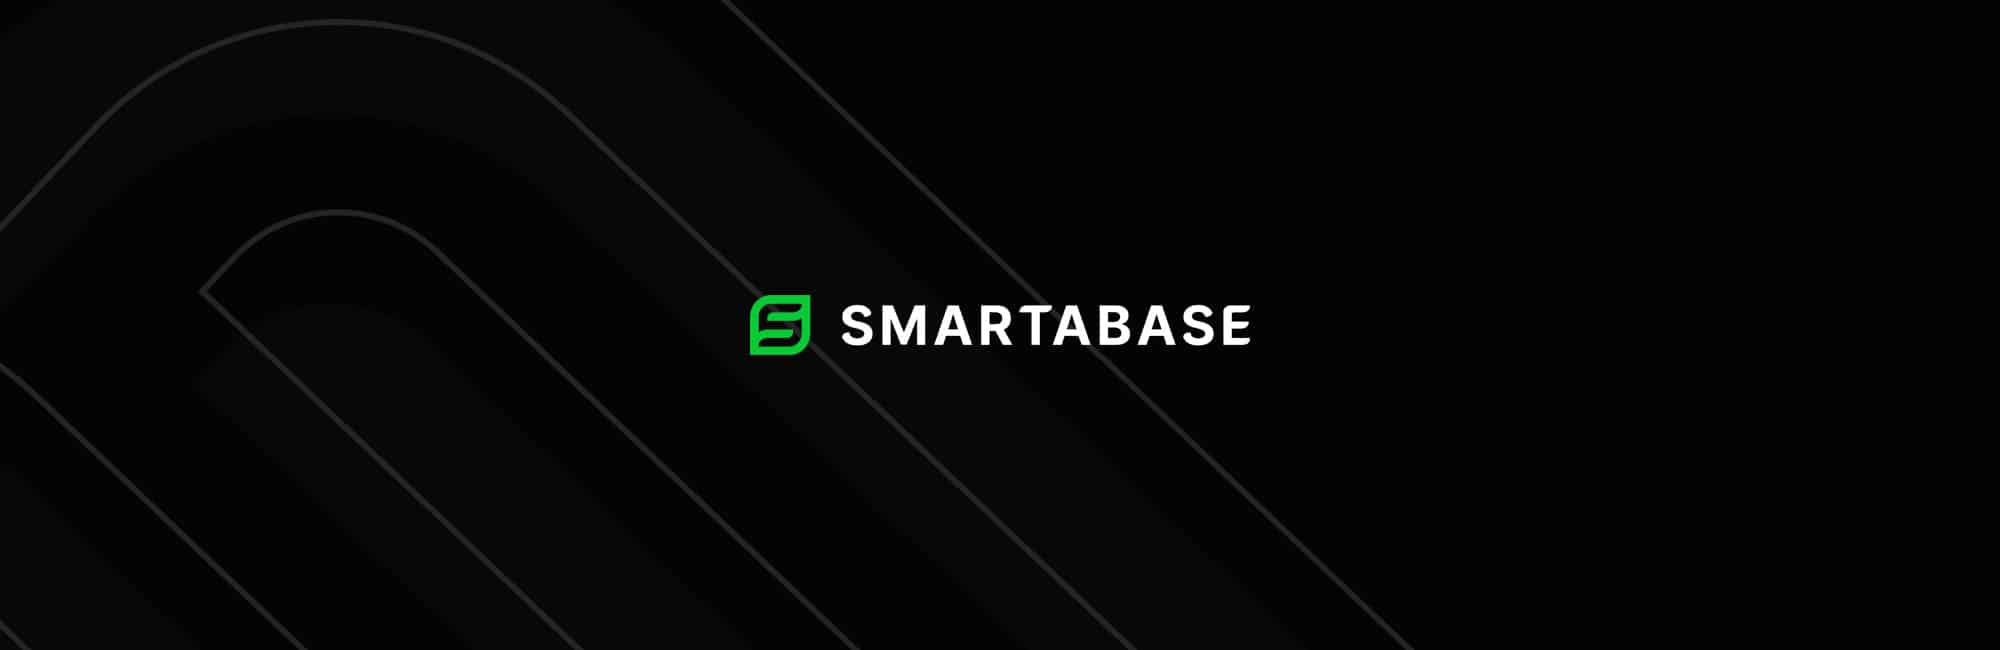 New Smartabase Logo